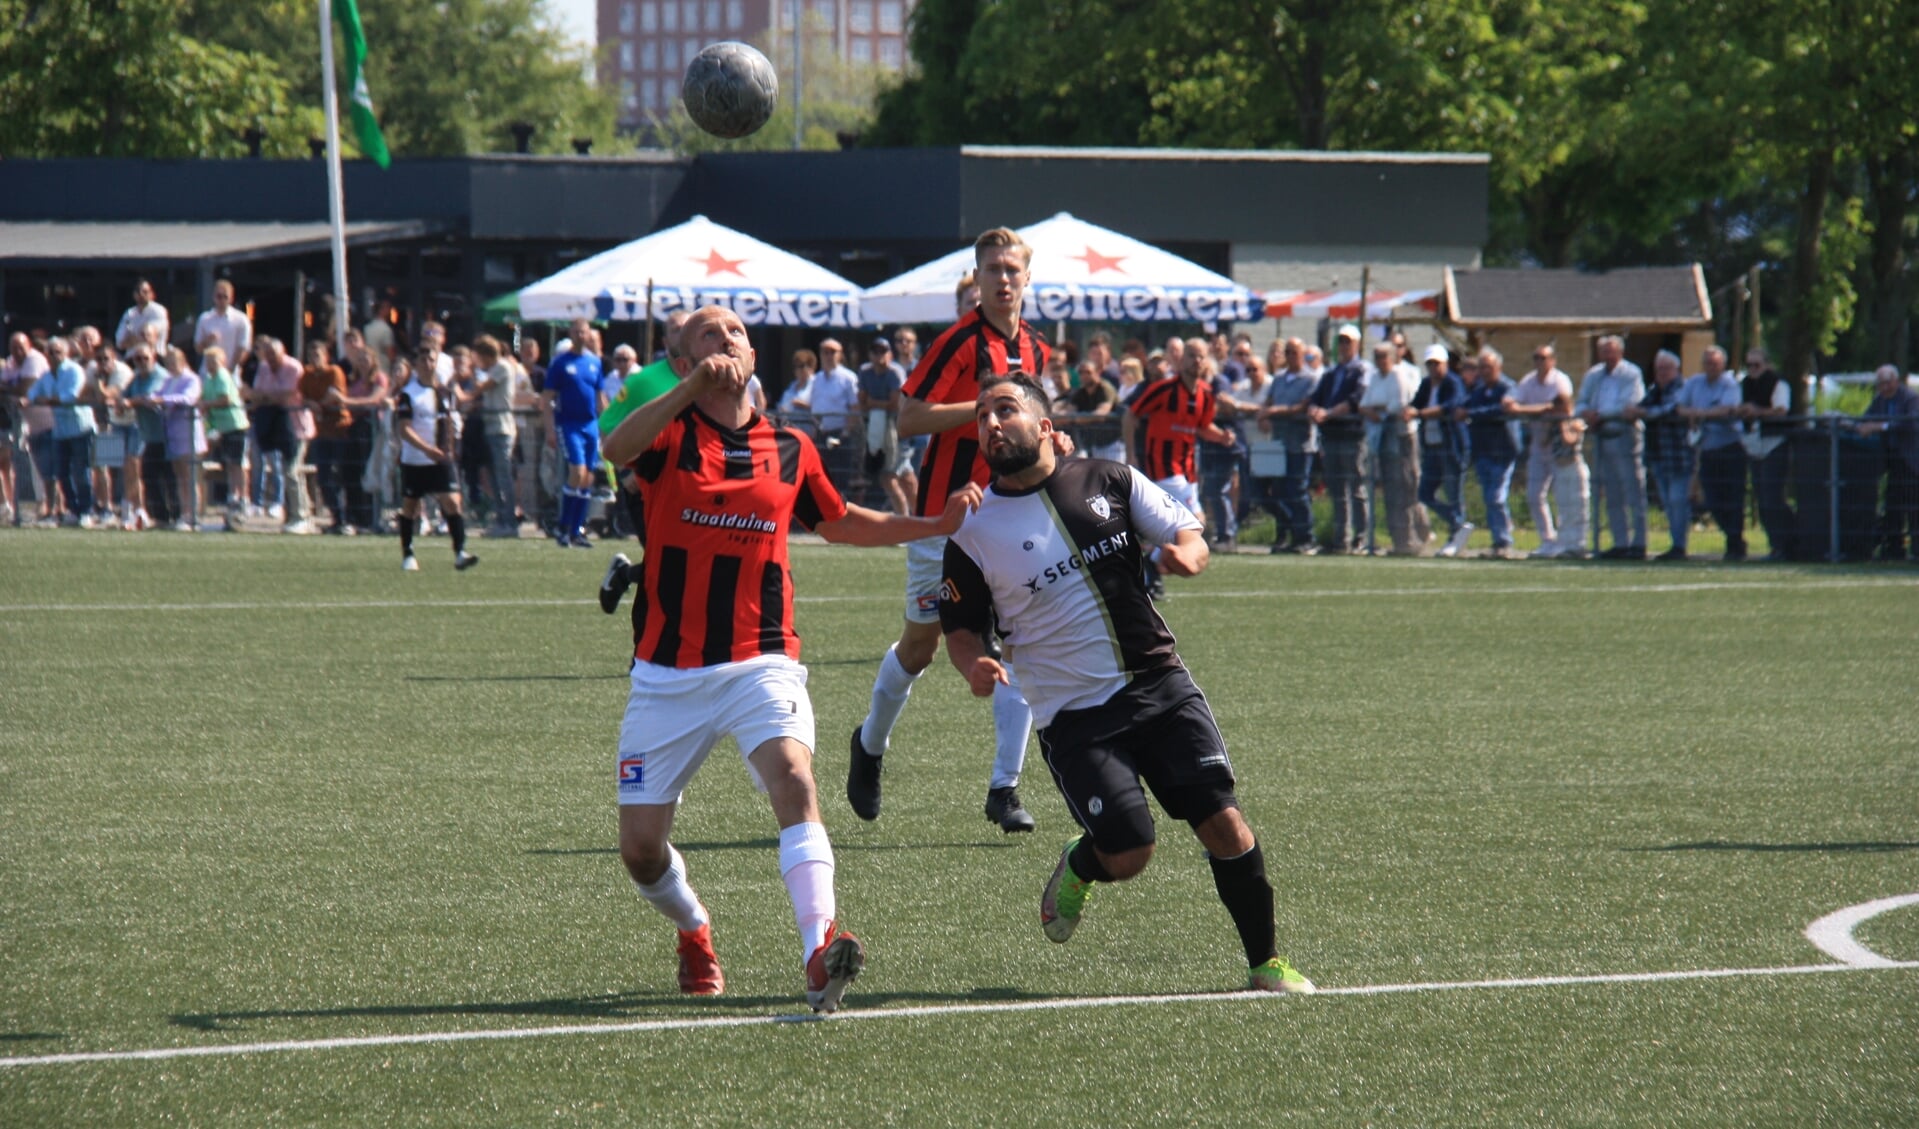 Het sportieve duel met veel fraaie doelpunten eindigde in een gelijkspel (5-5).